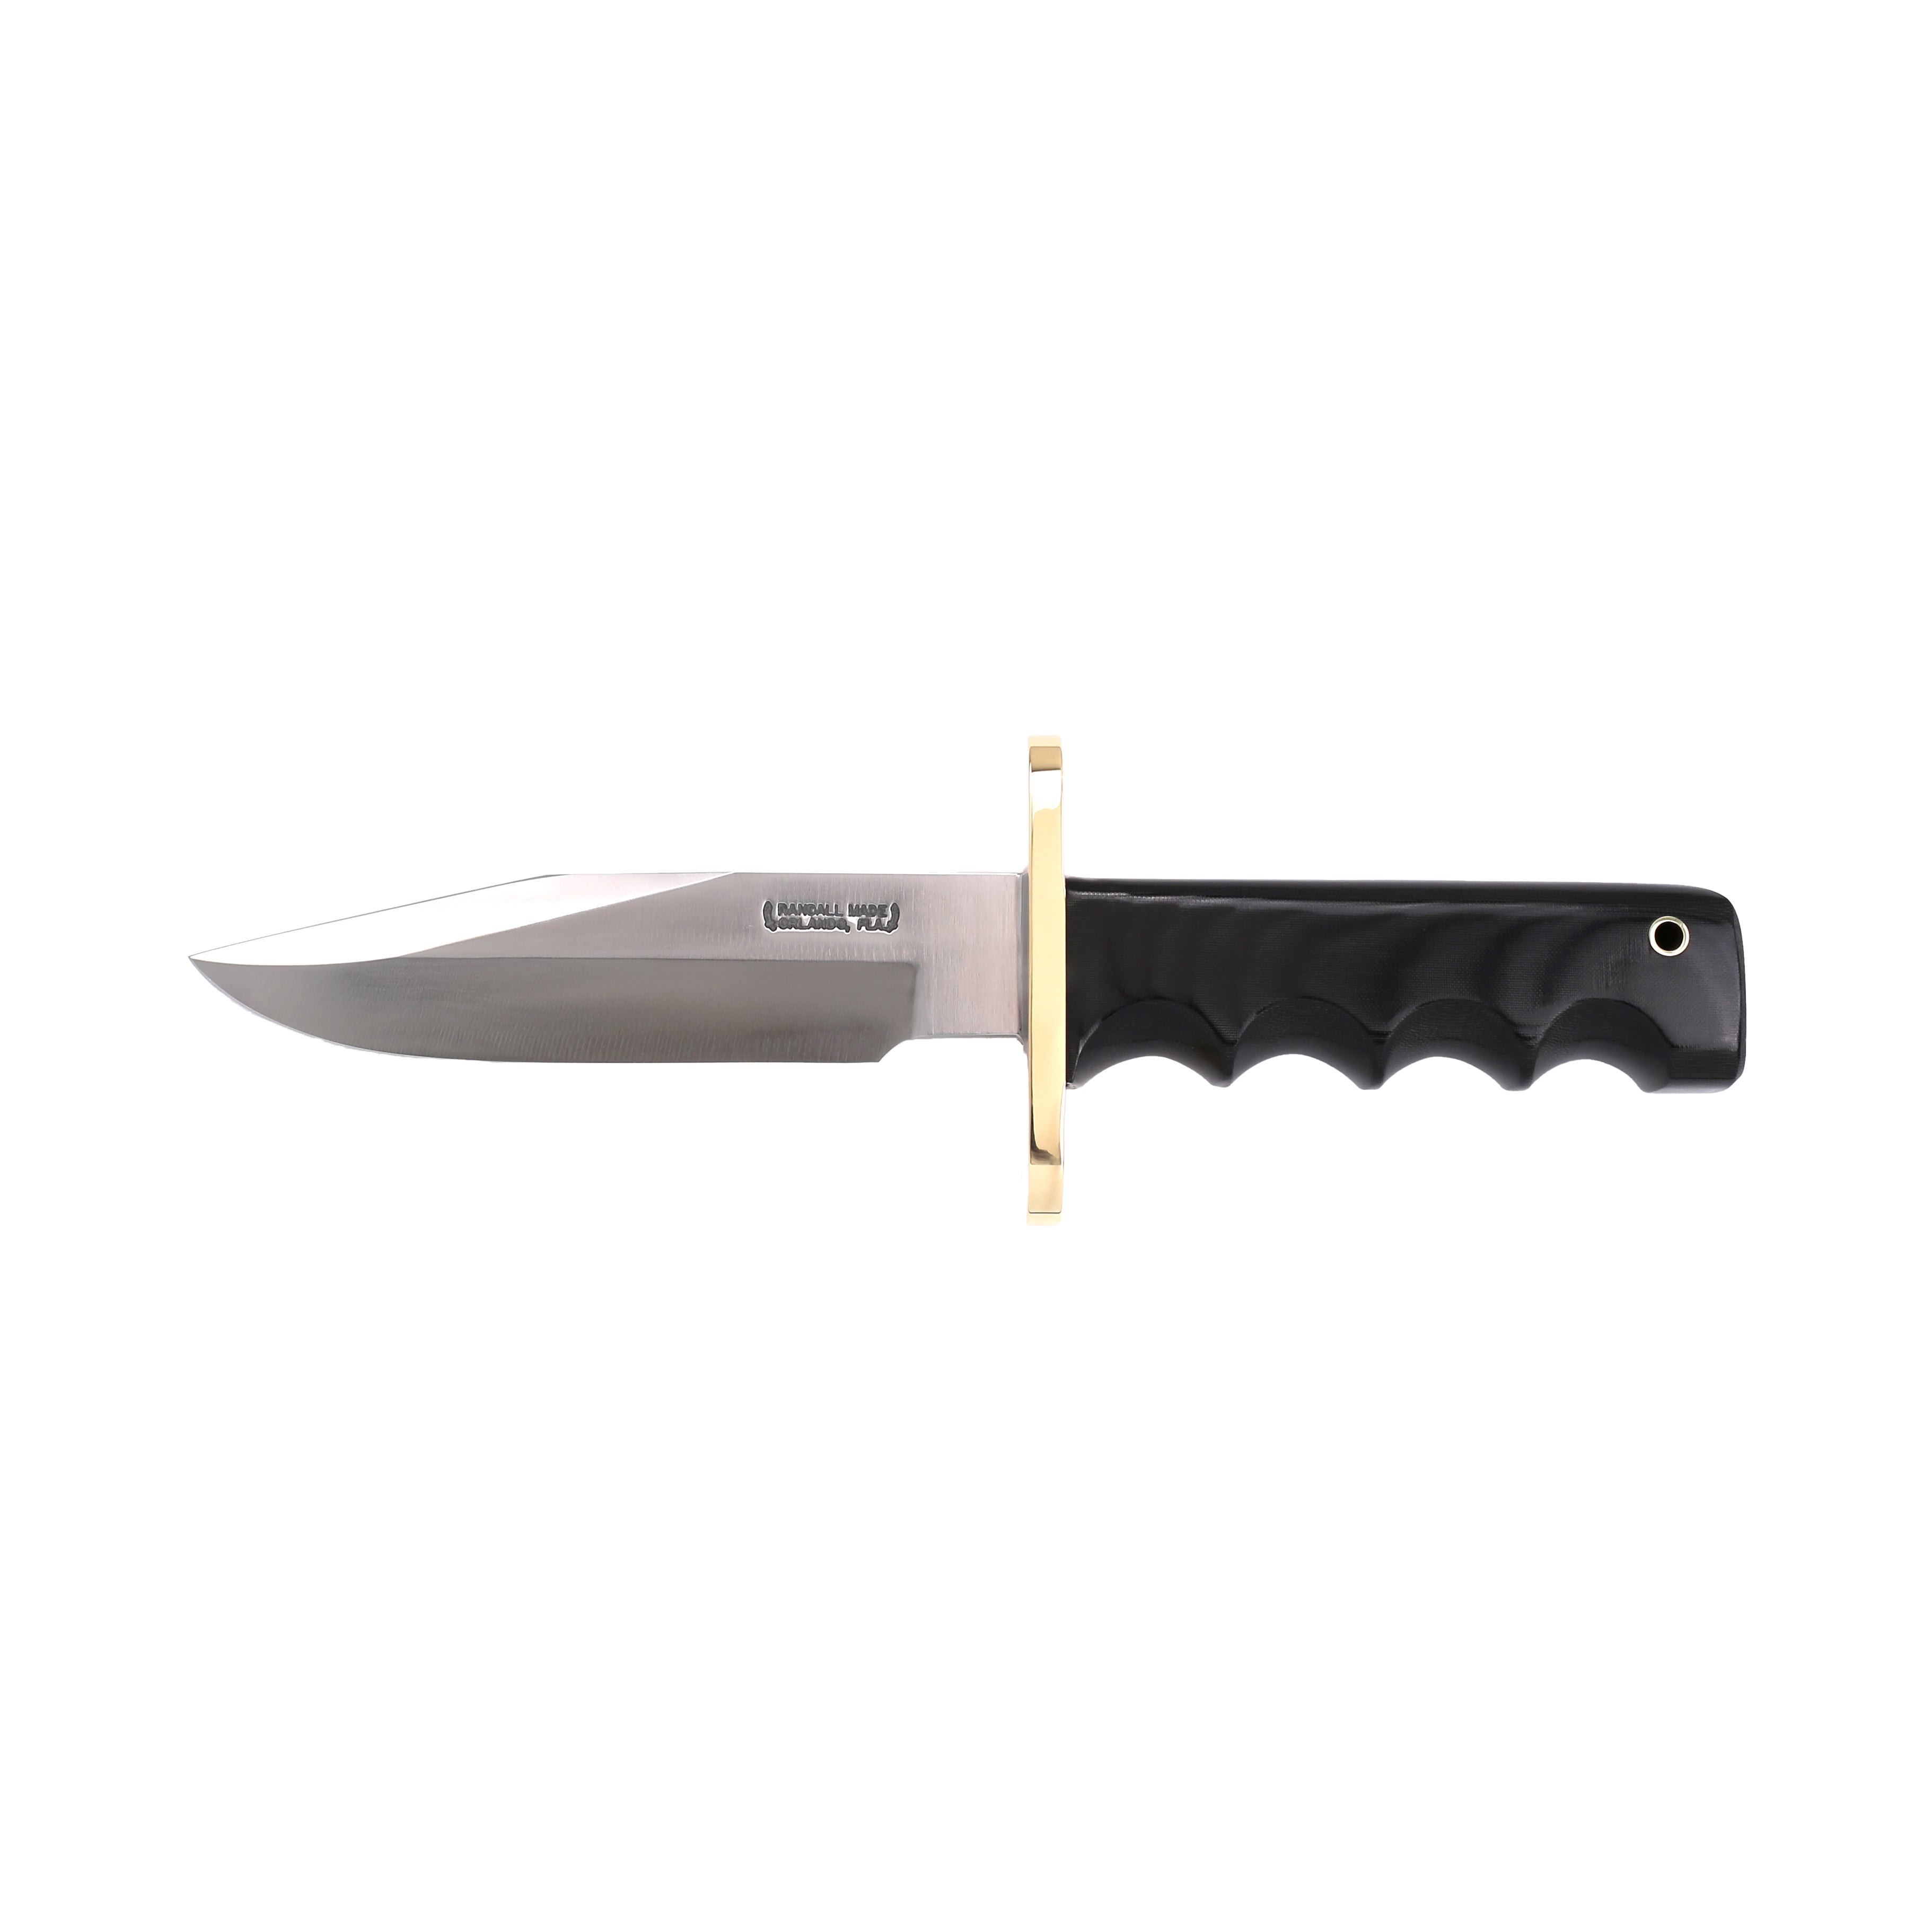 Randall Made Knives – RANDALLMADE KNIVES™, INC.